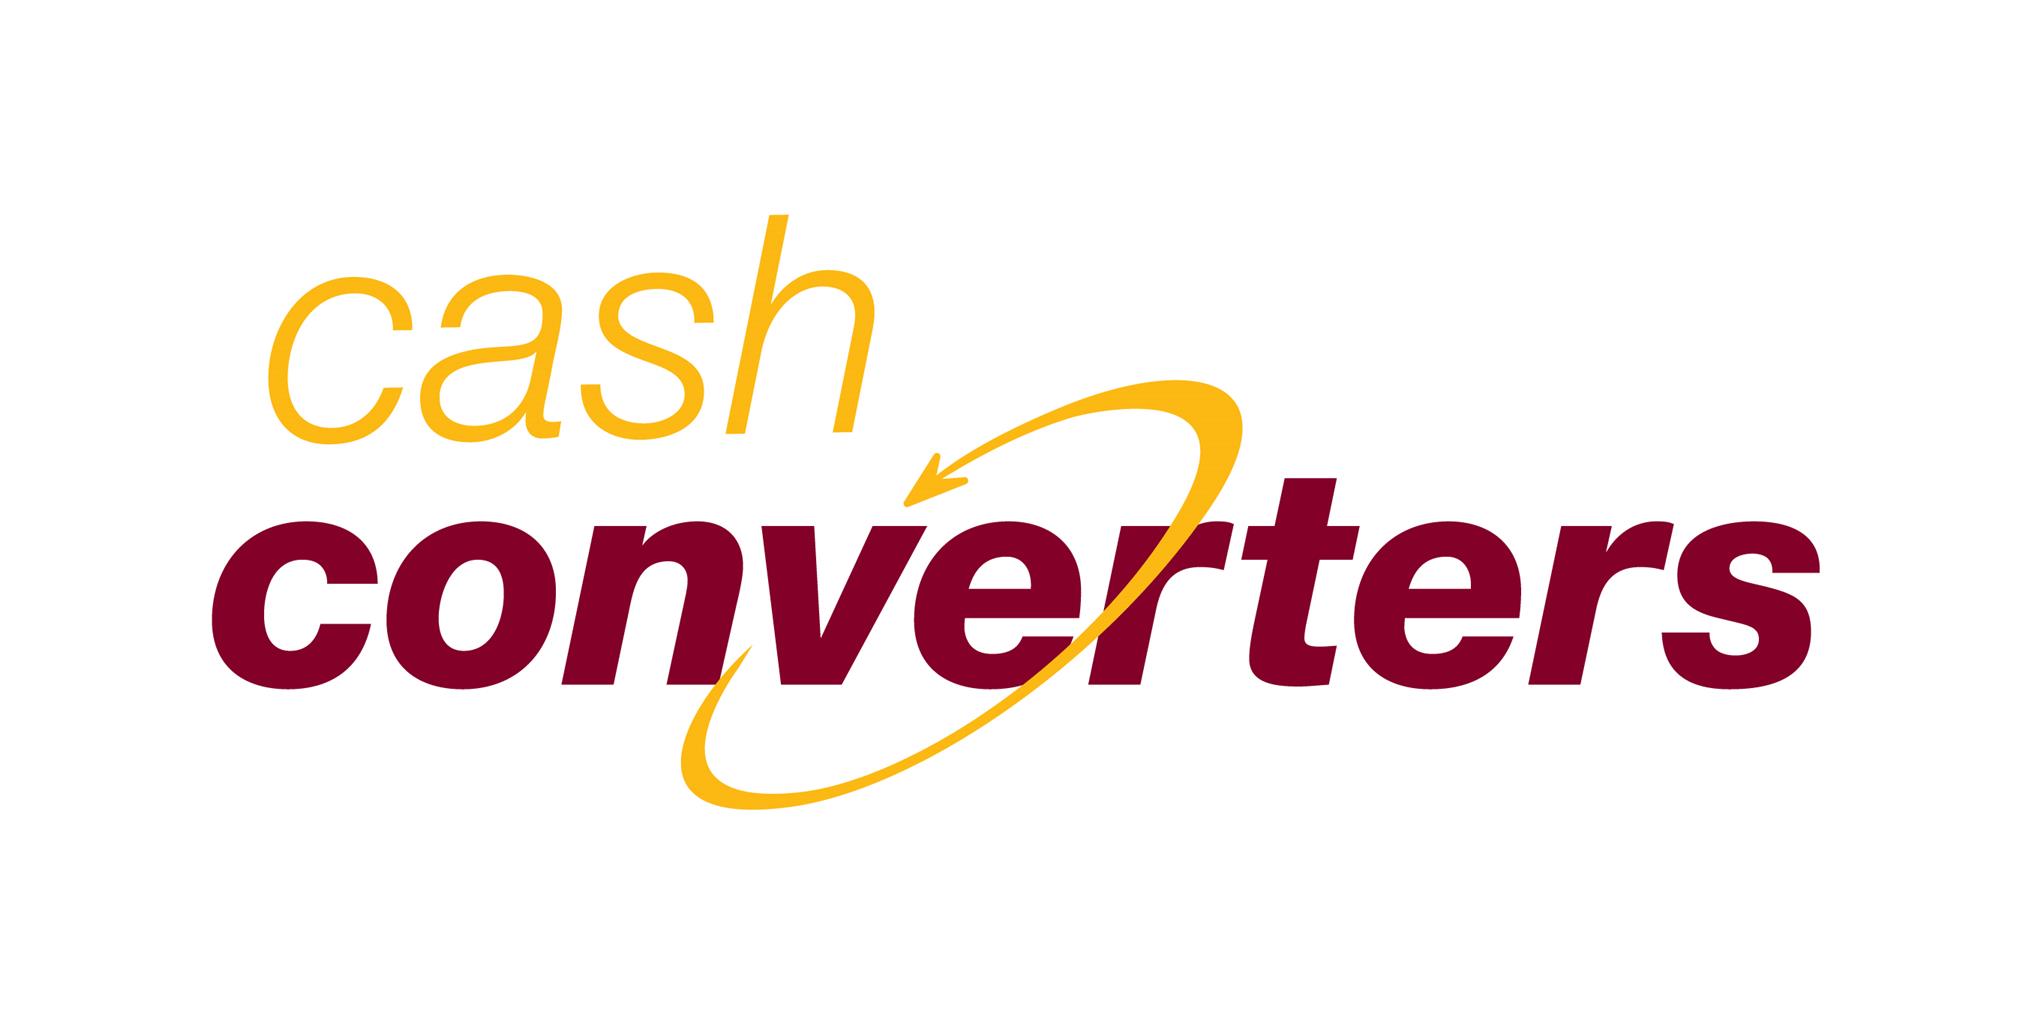 fifa 19 ps4 cash converters